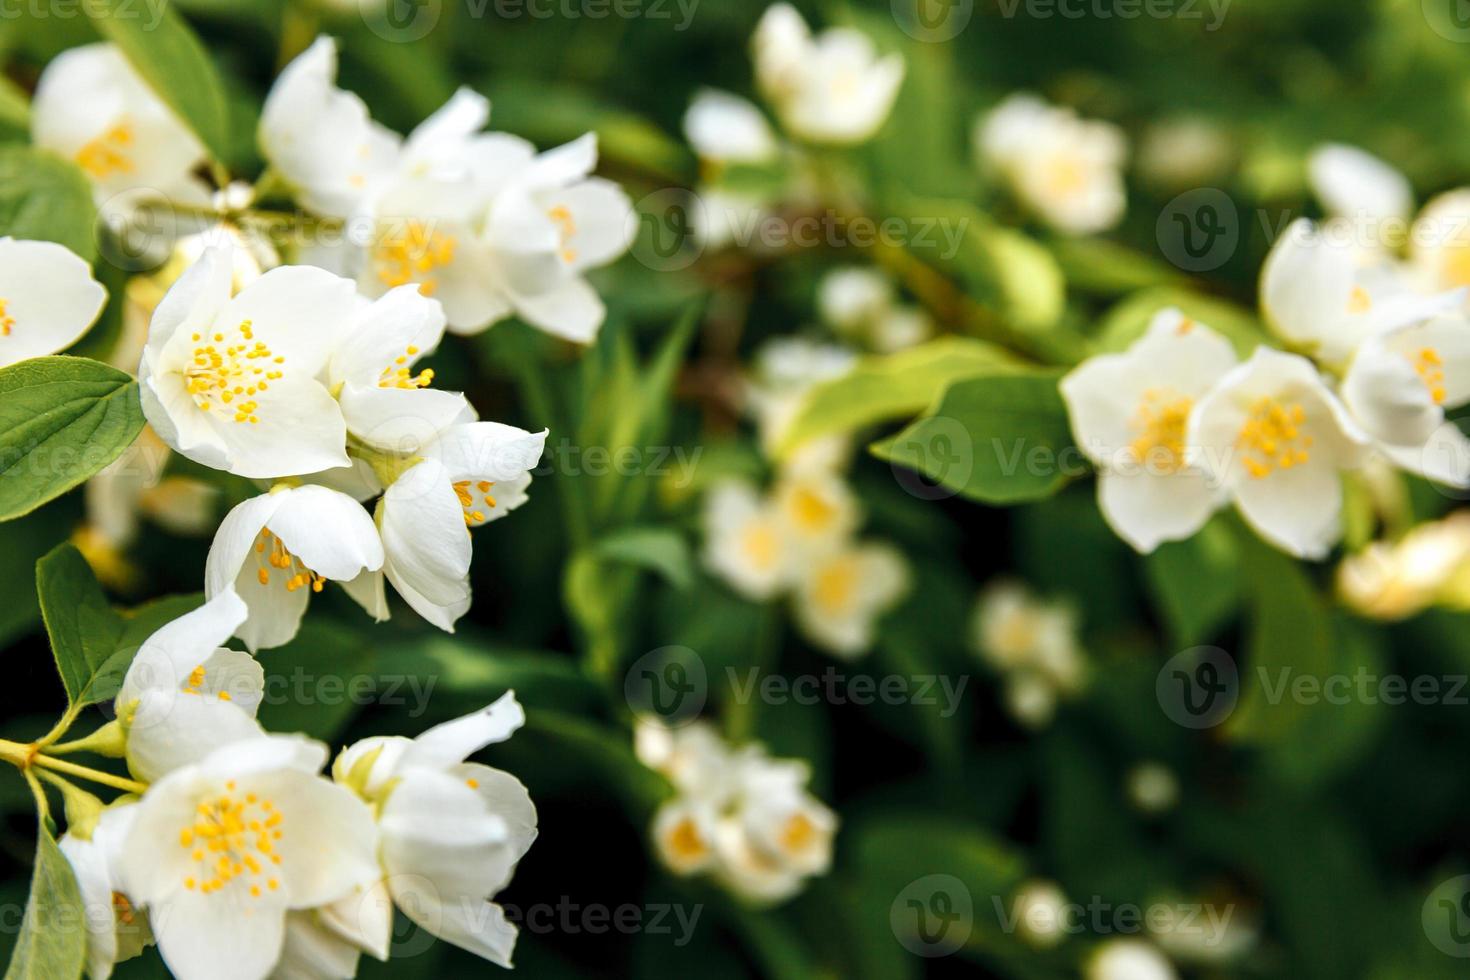 hermosas flores de jazmín blanco en primavera. fondo con arbusto de jazmín en flor. inspirador jardín o parque florido de primavera floral natural. diseño de arte floral. concepto de aromaterapia. foto